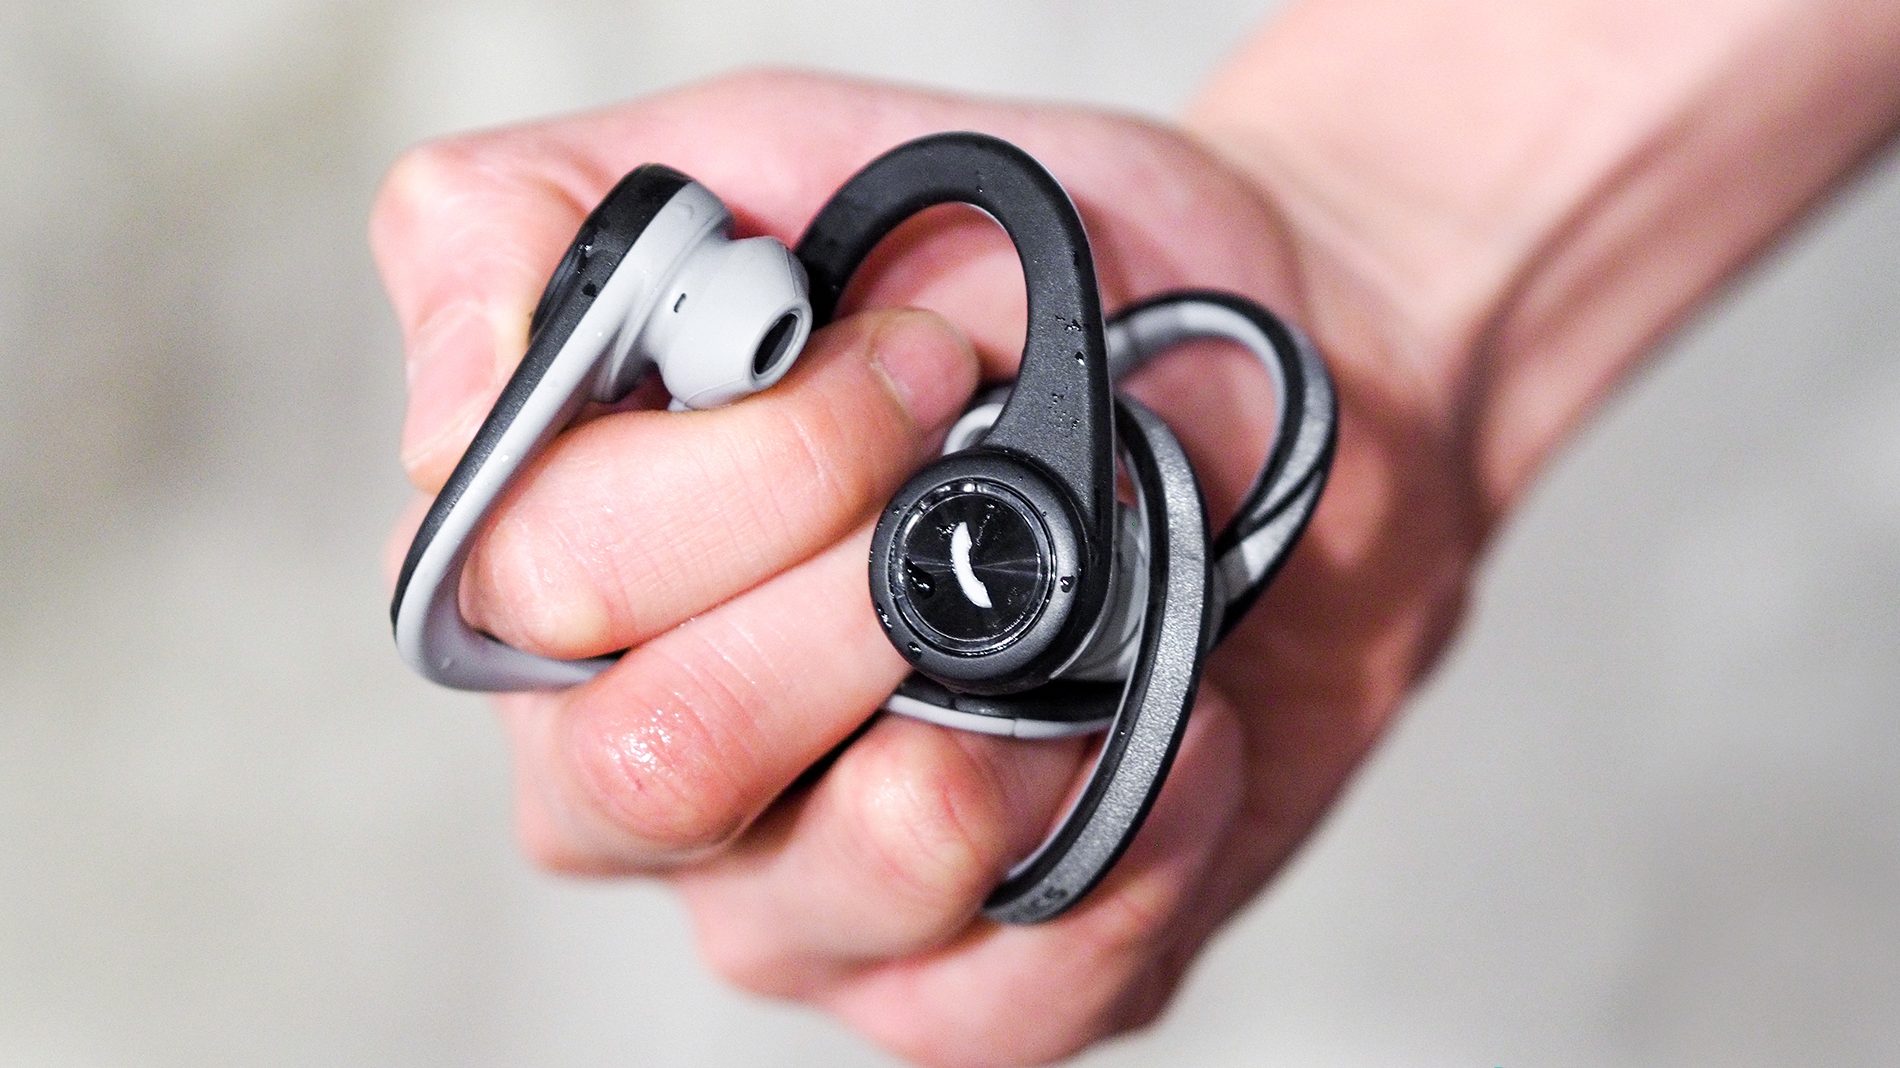 BackBeat FIT headphones wireless Bluetooth Workout Sweat resistant waterproof